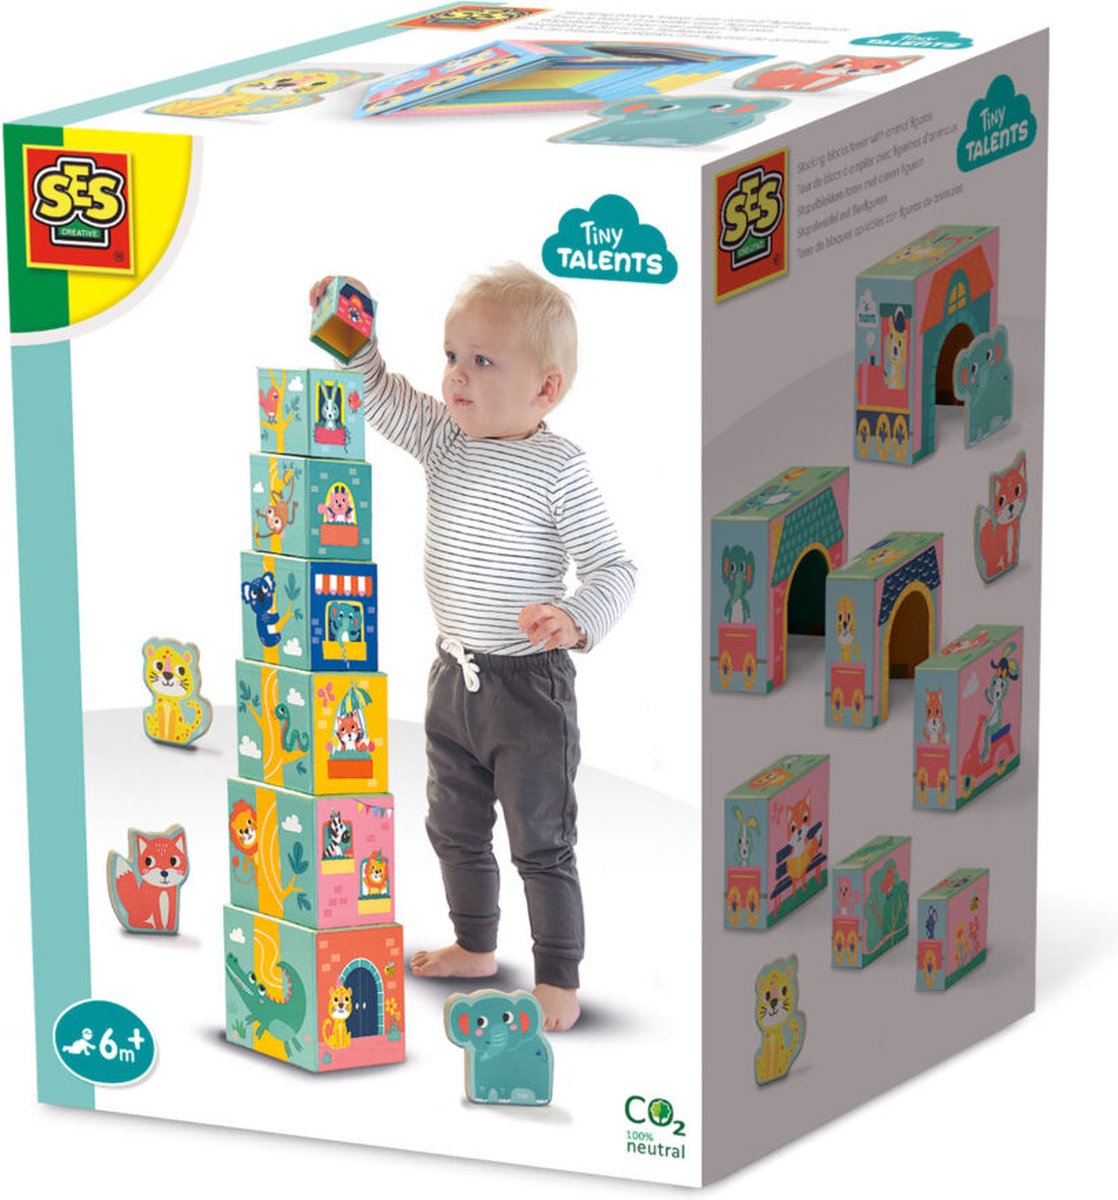   - Tiny Talents - Stapelblokken toren met dieren figuren - moderne, gekleurde illustraties - compact op te bergen